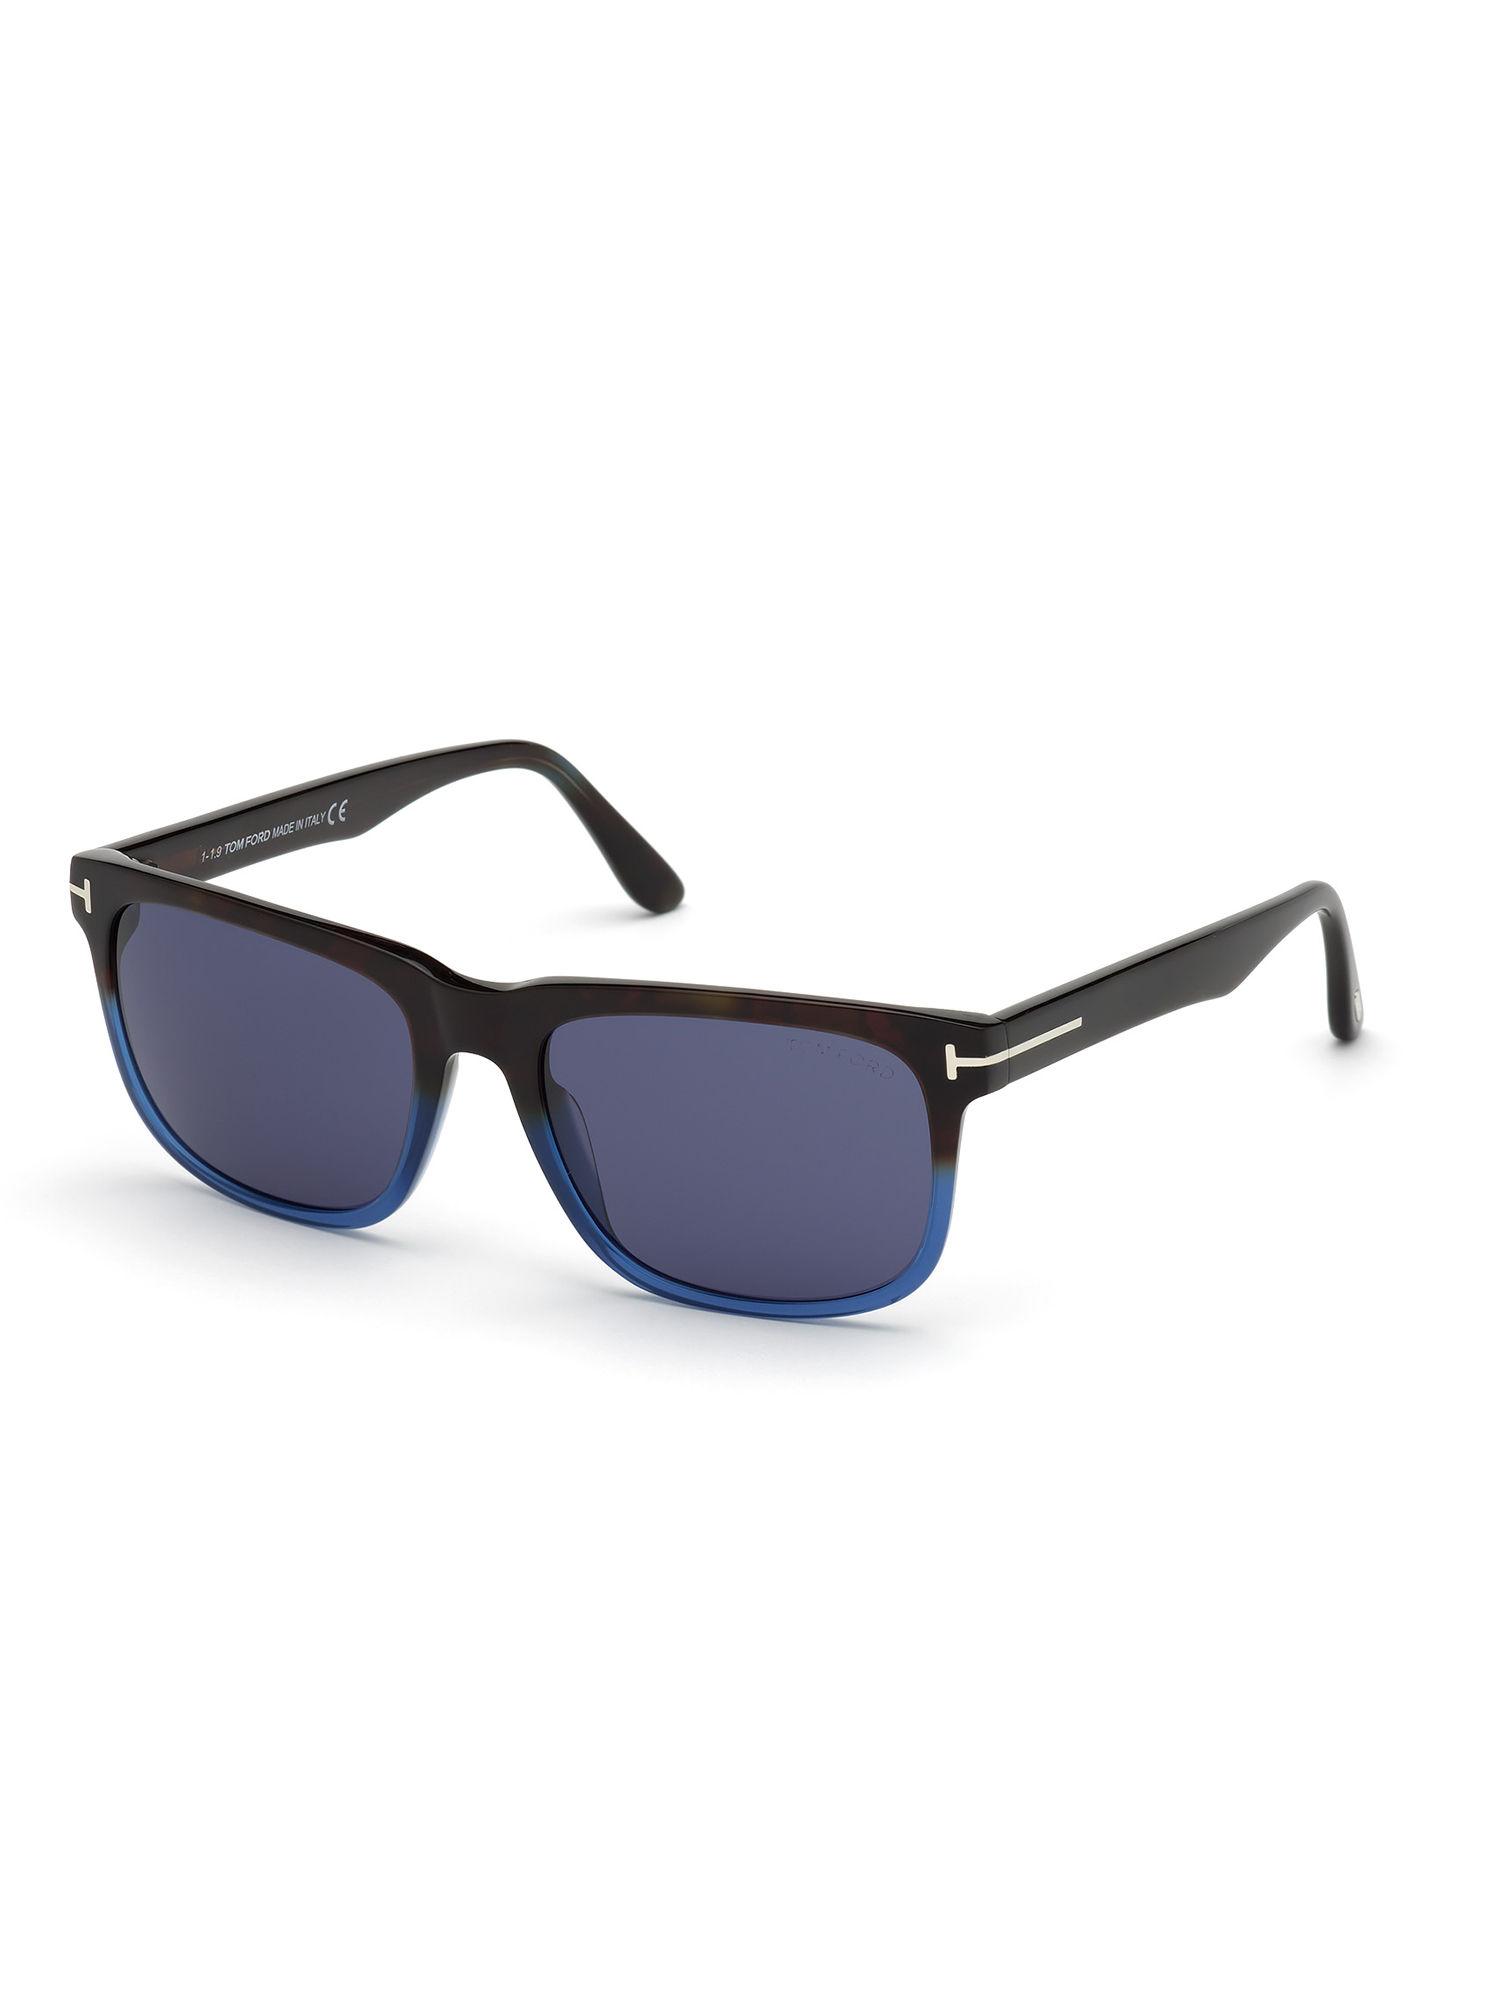 brown plastic sunglasses ft0775 56 55v